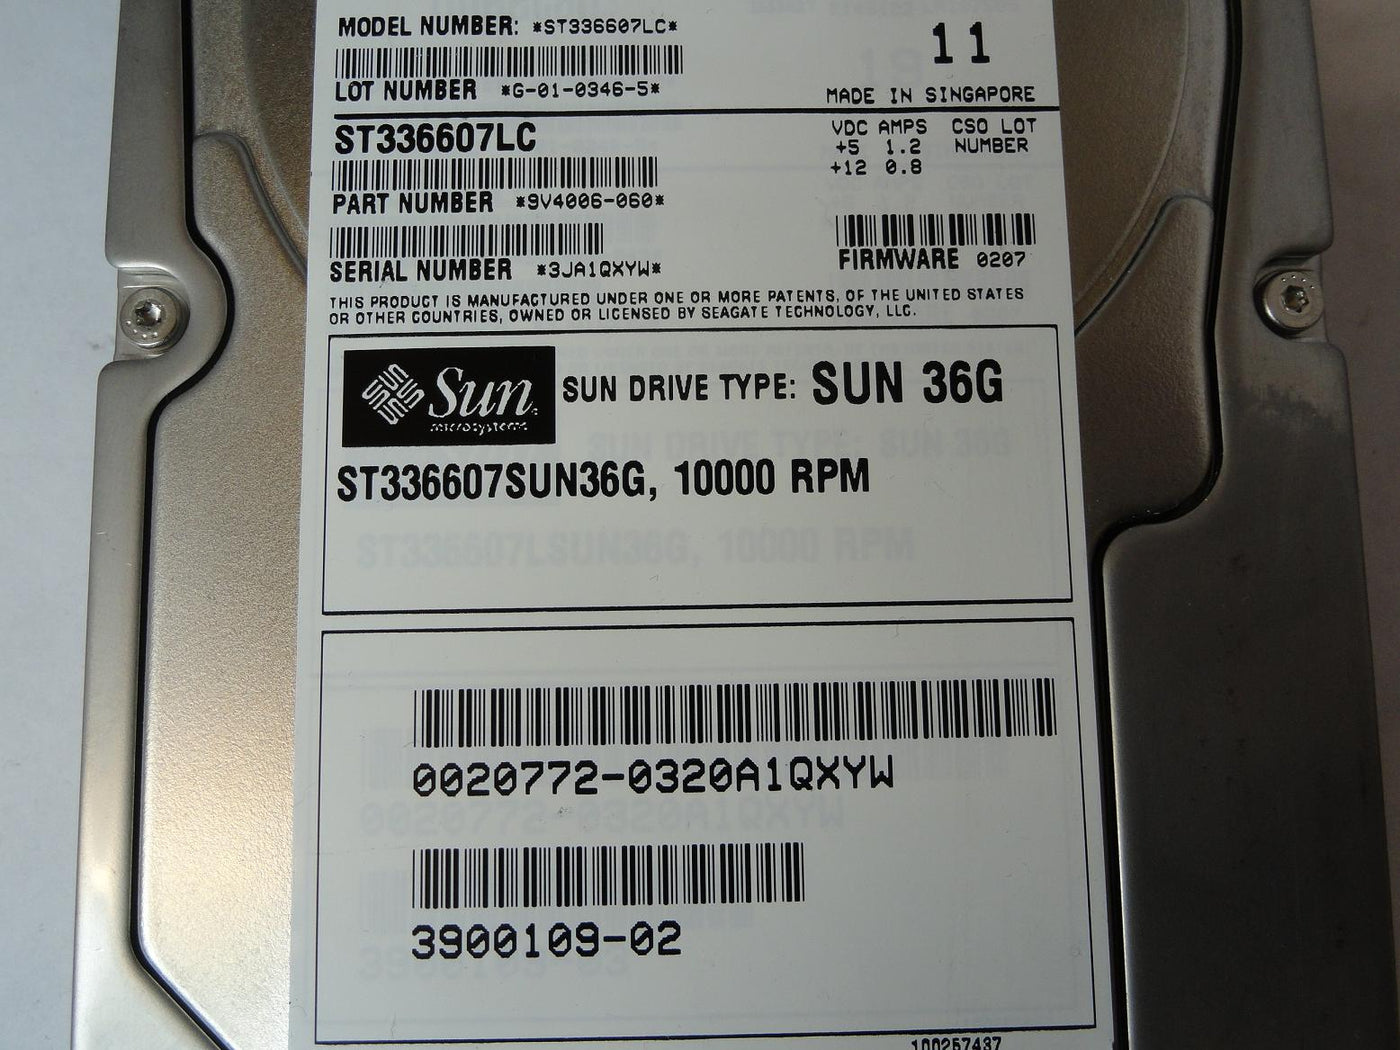 PR22270_9V4006-060_Seagate Sun 36GB SCSI 80 Pin 10Krpm 3.5in HDD - Image4